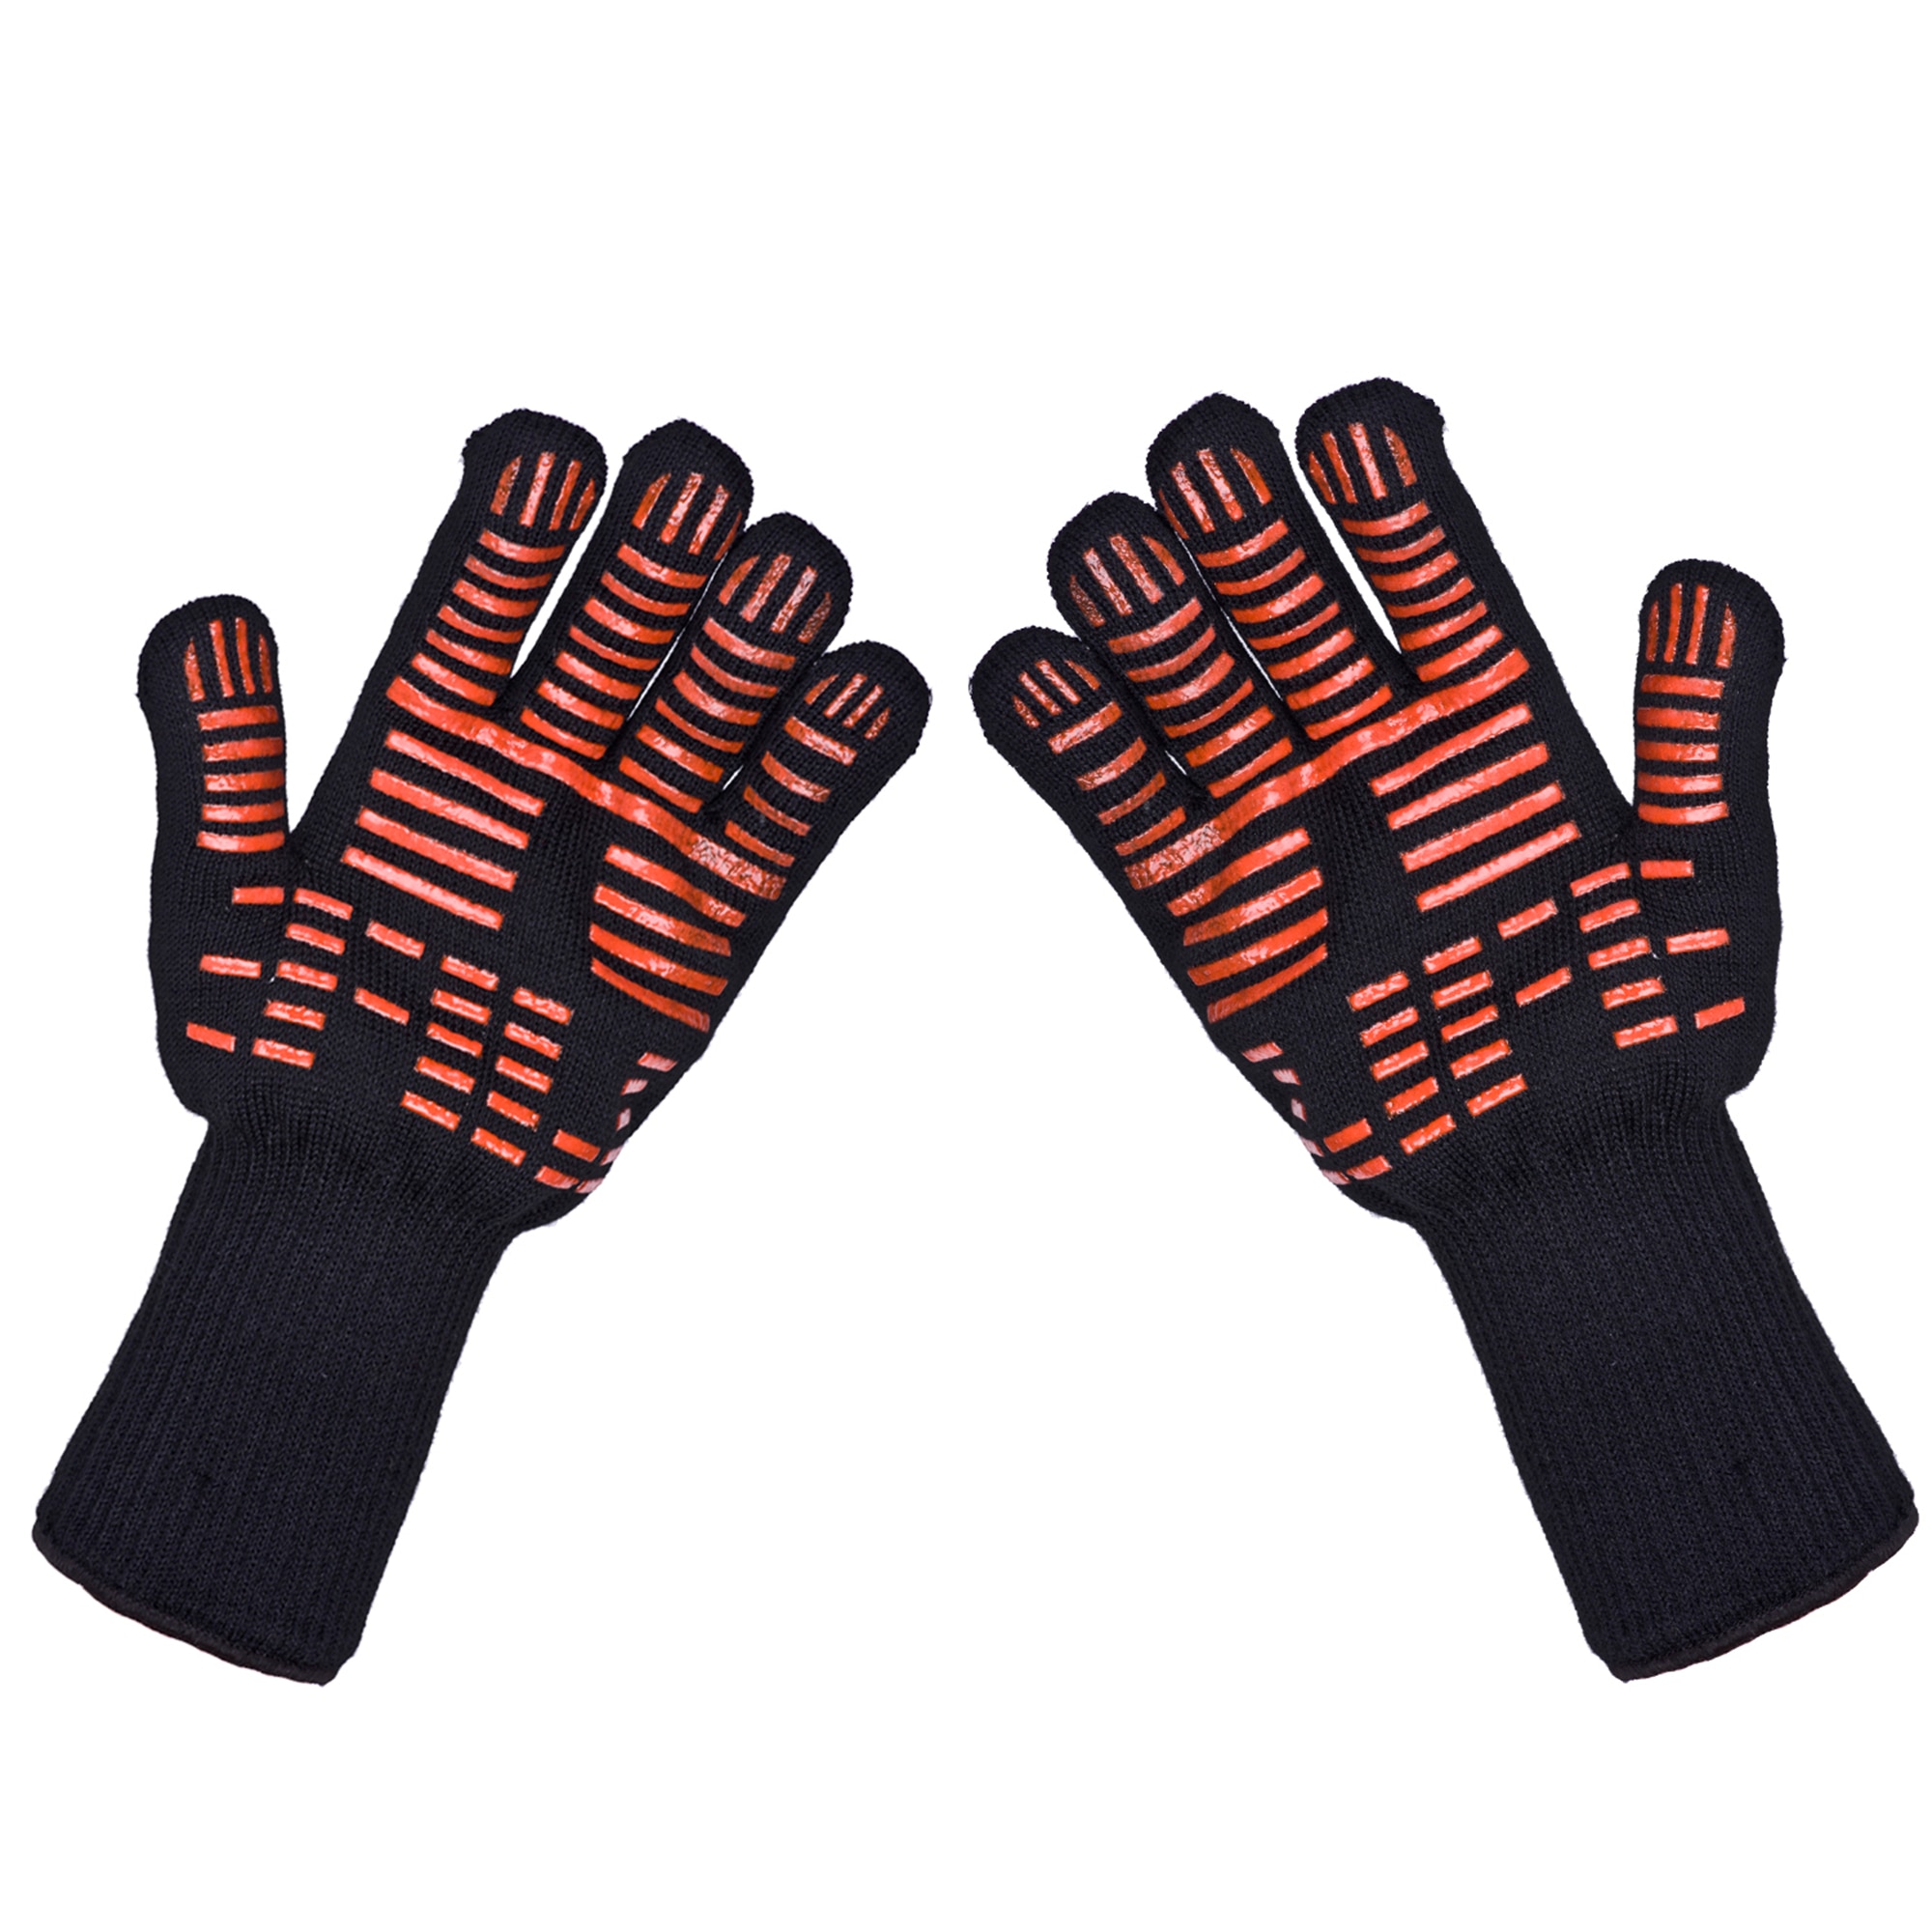 Термостойкие перчатки, которые способны переносить температуру до 500 градусов